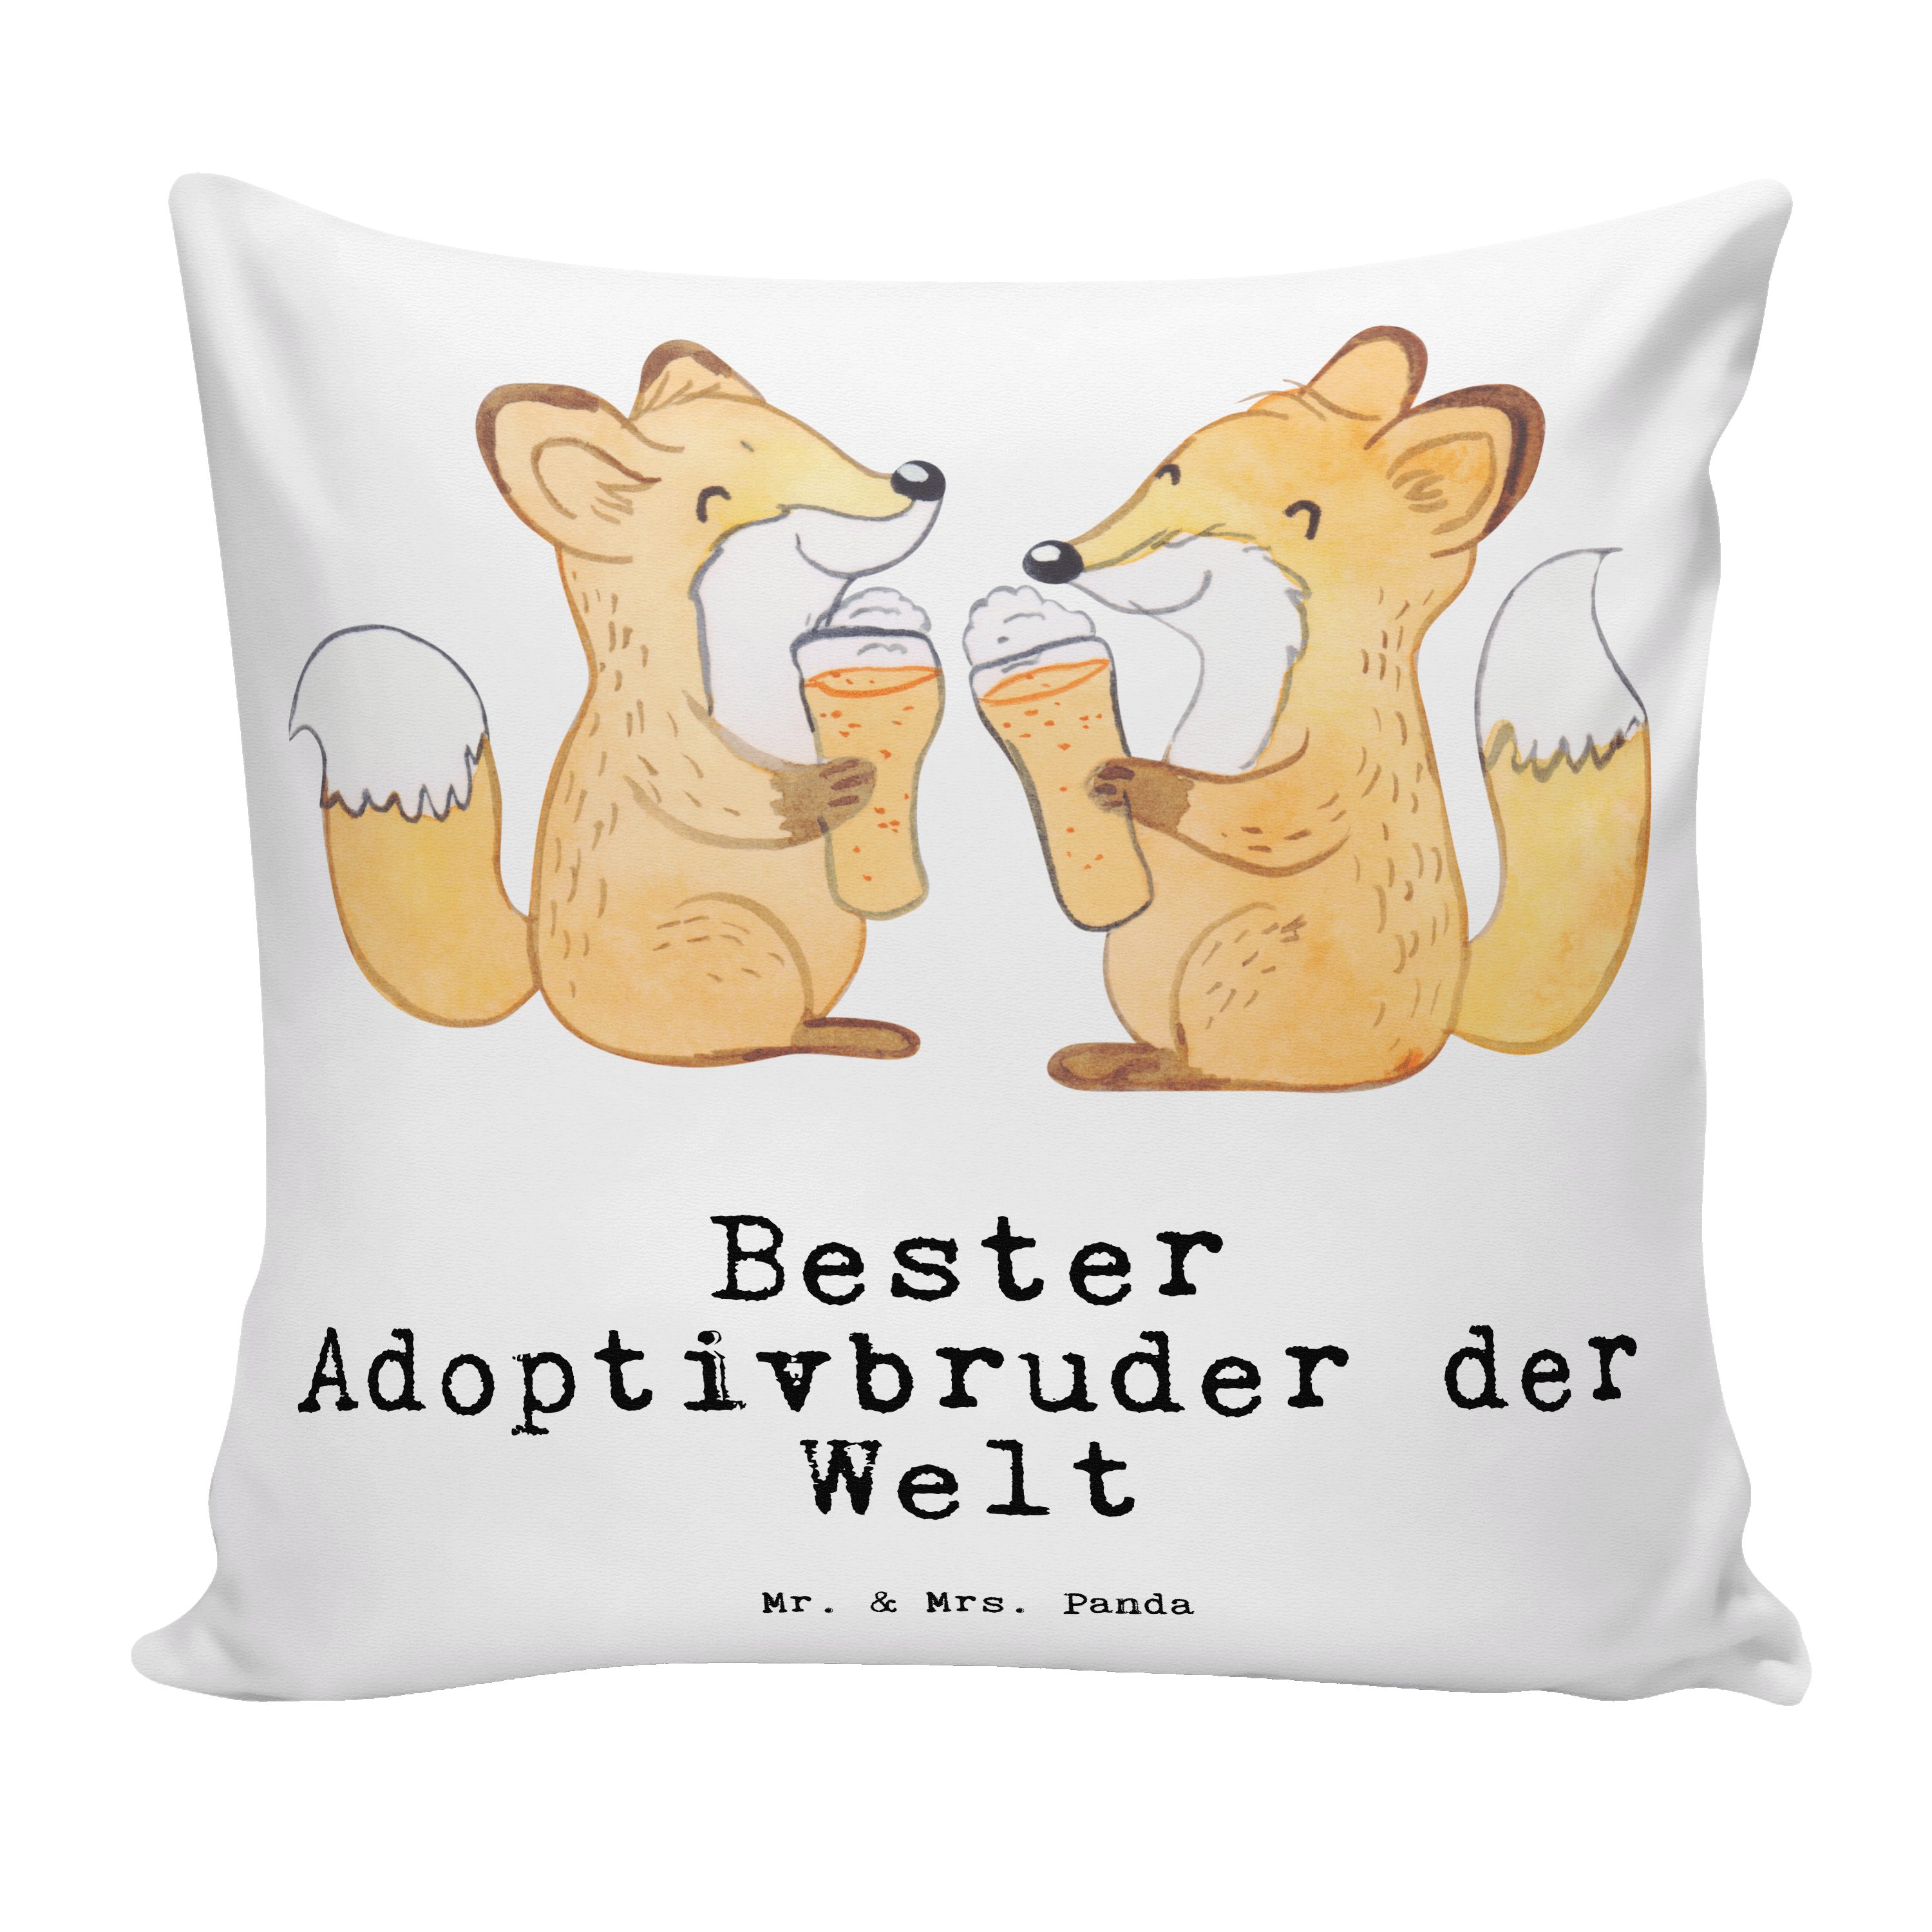 Mr. & Mrs. Panda Dekokissen Fuchs Bester Adoptivbruder der Welt - Weiß - Geschenk, Familie, Sofak